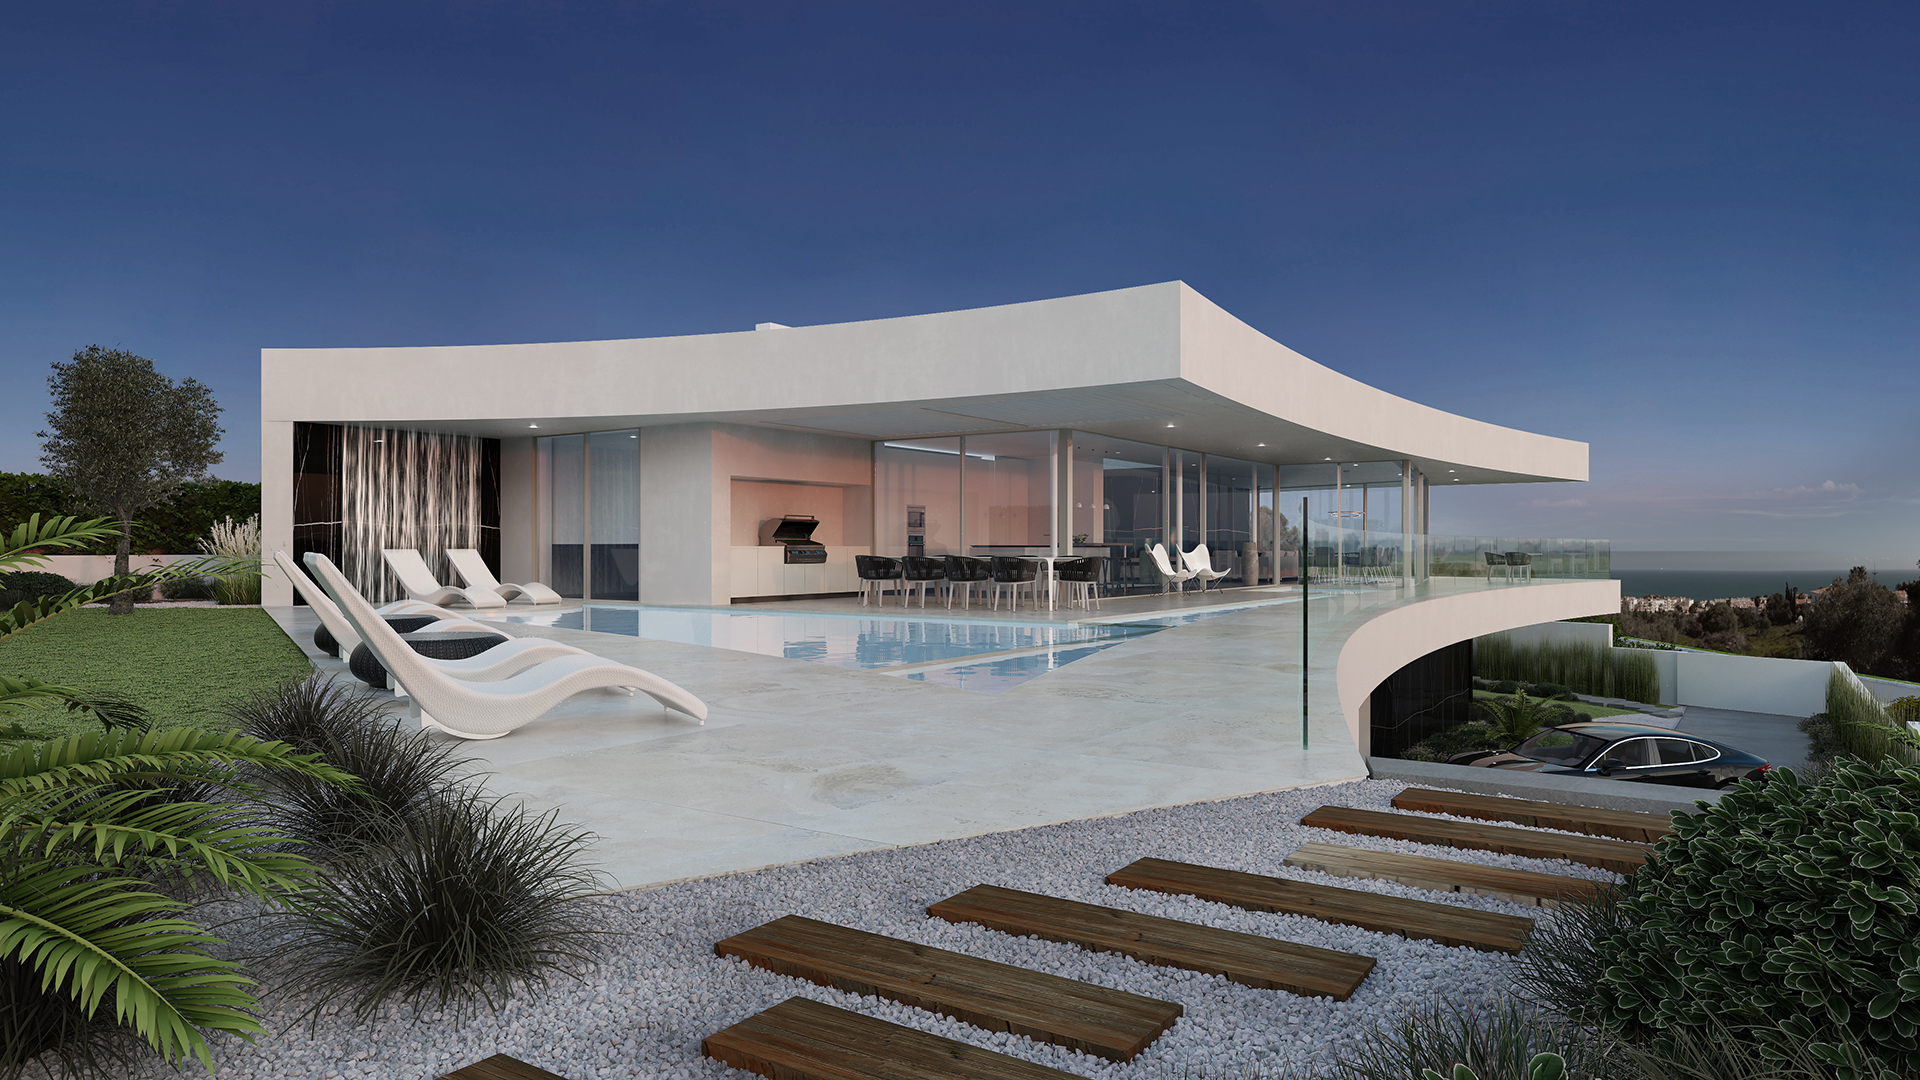 Moderne Off-Plan-Villen mit Pool und spektakulärem Meerblick, Praia da Luz, West Algarve | LG1819 Diese modernen 2-stöckigen Villen mit 3/4 Schlafzimmern und privatem Pool werden im "Passivhaus"-Stil gebaut, umweltfreundlich, Effizient mit intelligenten, erneuerbaren Energiemanagementsystemen und modernem Design, sowie umweltfreundlichen Baumaterialien. Dies ist die Chance, Ihr eigenes maßgeschneidertes luxuriöses Öko-Haus in der Nähe des schönen Stranddorfes Praia da Luz an der West Algarve zu entwerfen.